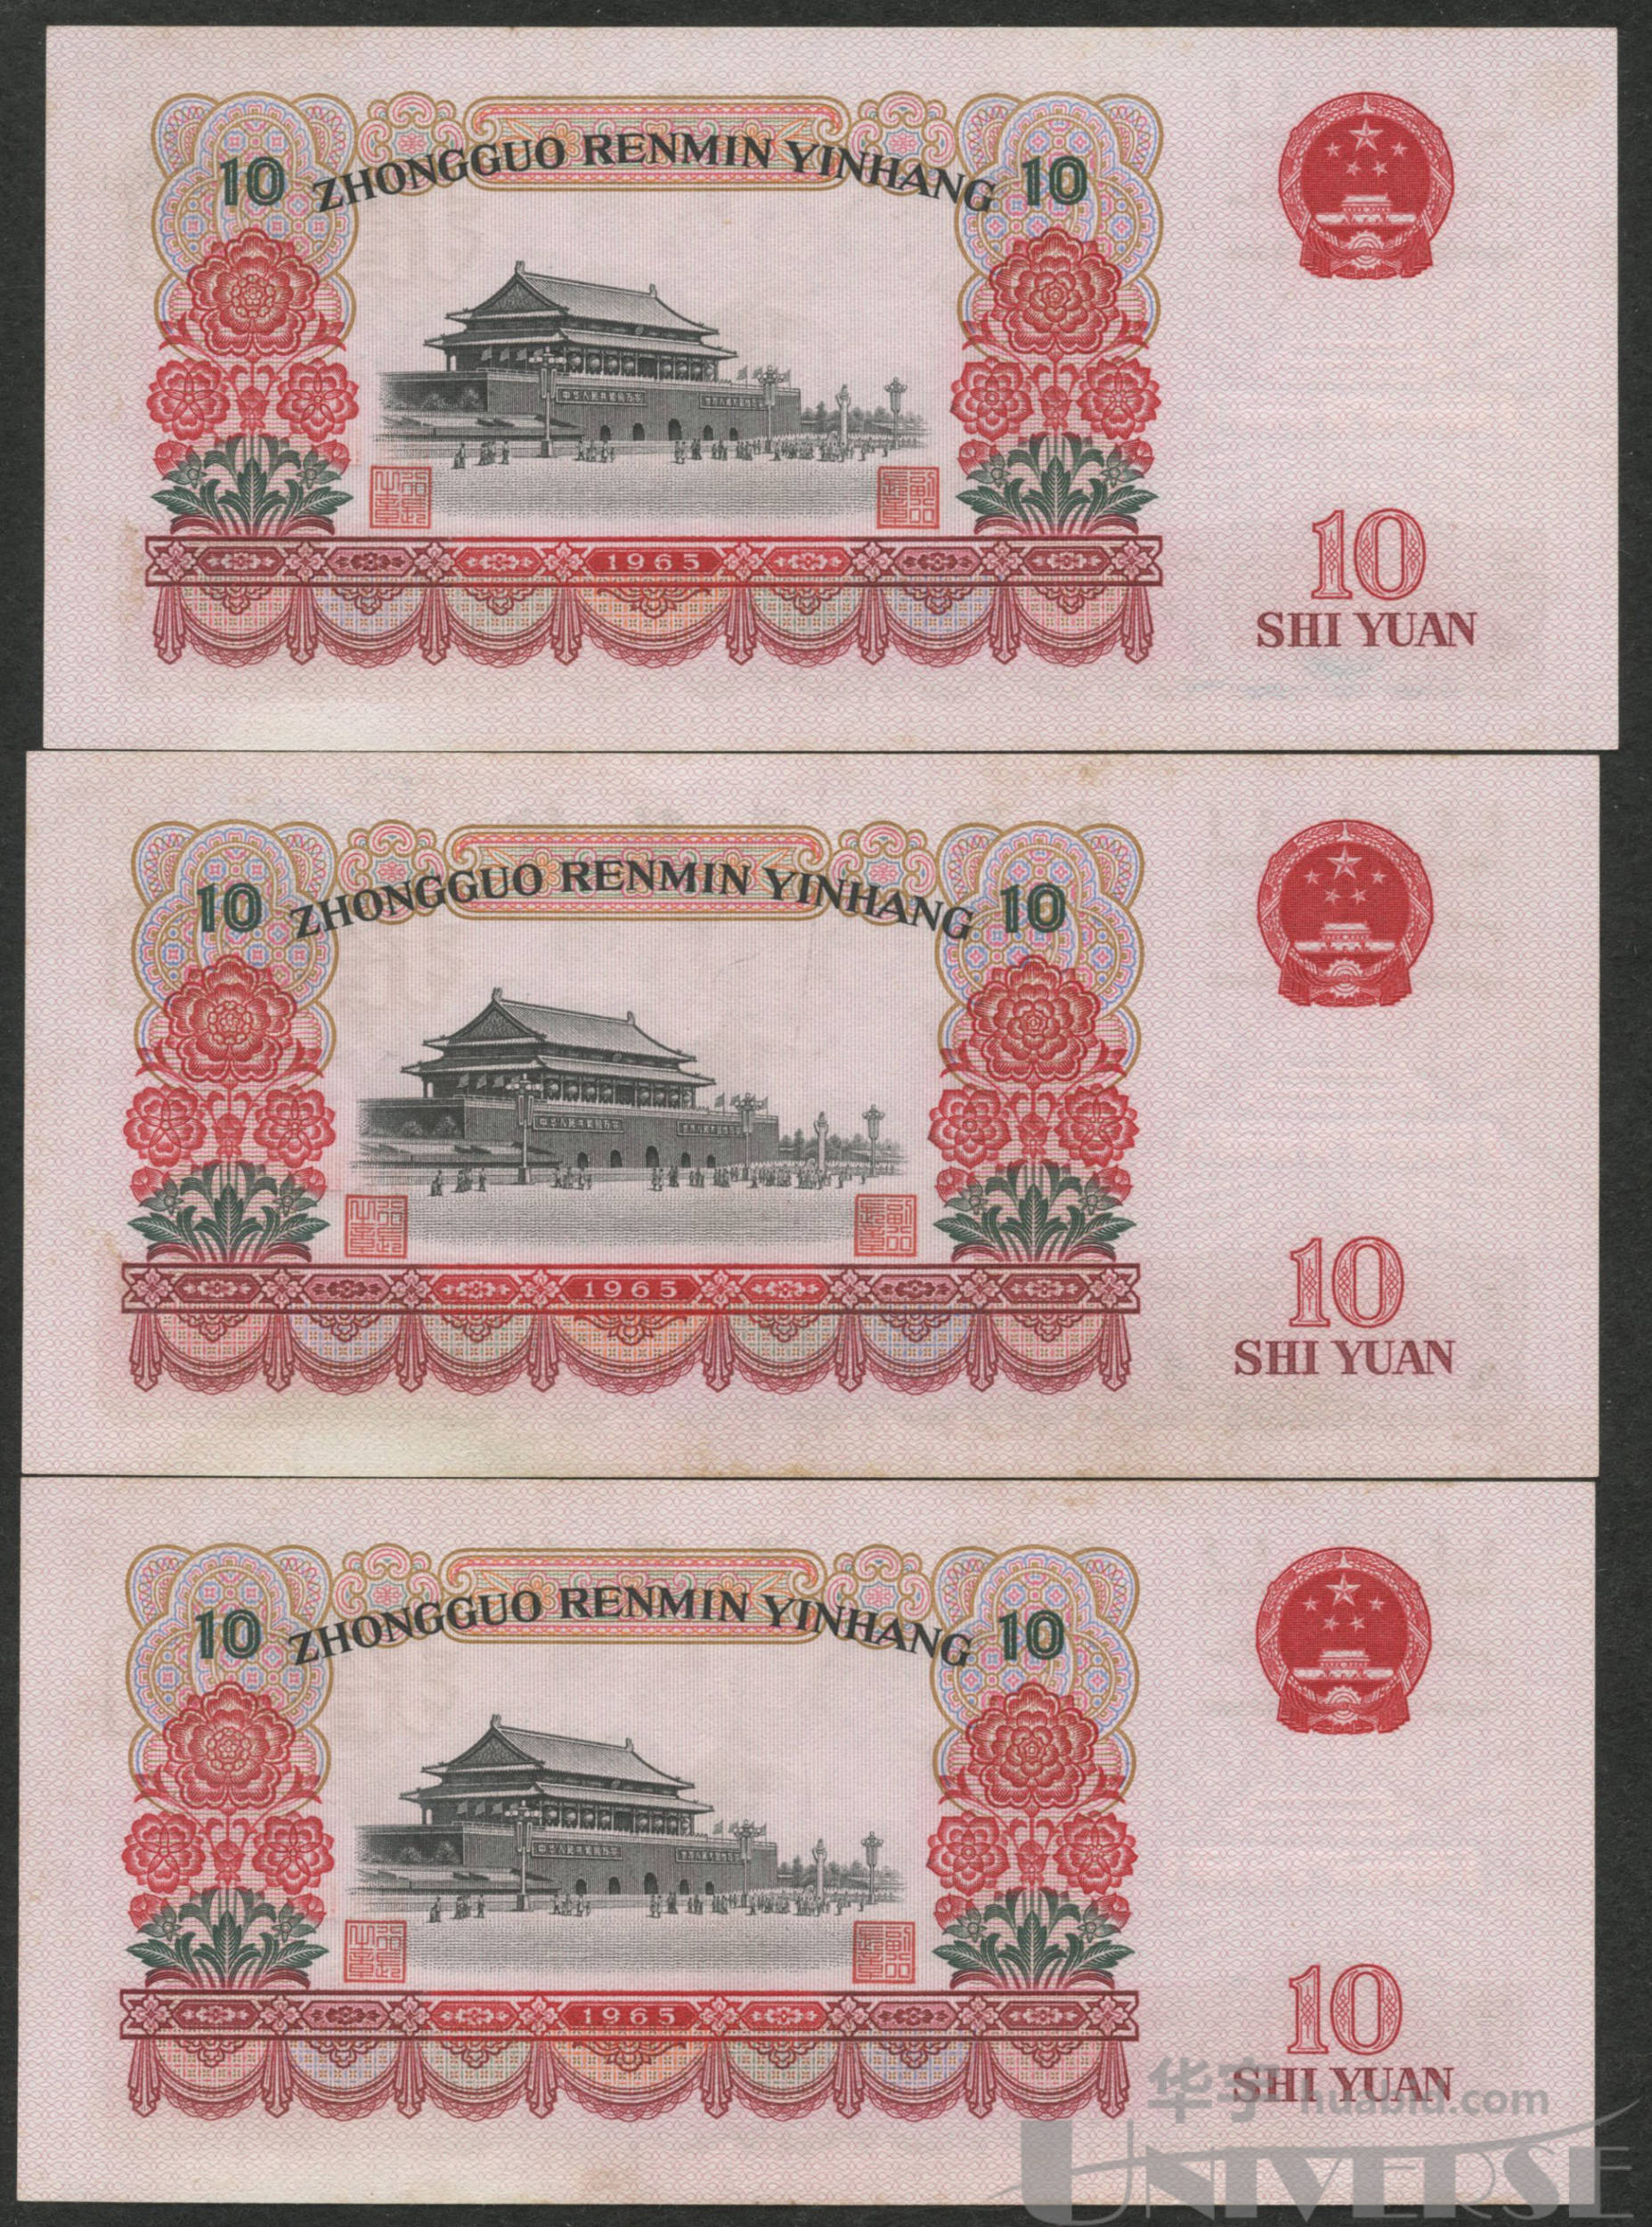 1965年第三版人民币人民代表步出大会堂拾圆三字冠三枚,连号(2683541